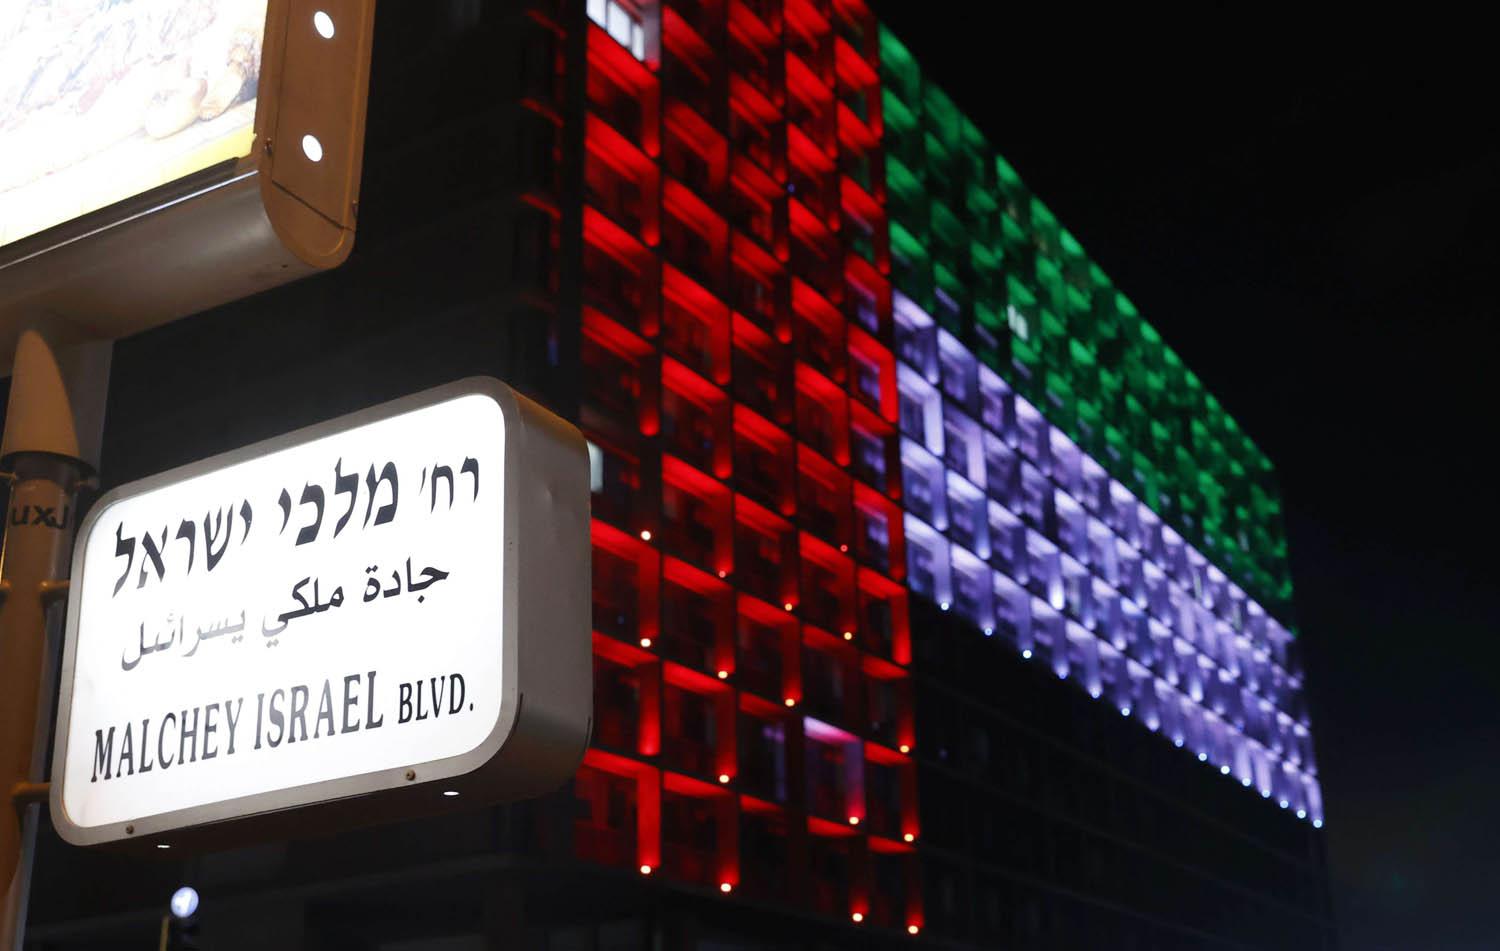 مبنى بلدية تل أبيب يحتفل باضاءة علم الامارات على واجهته